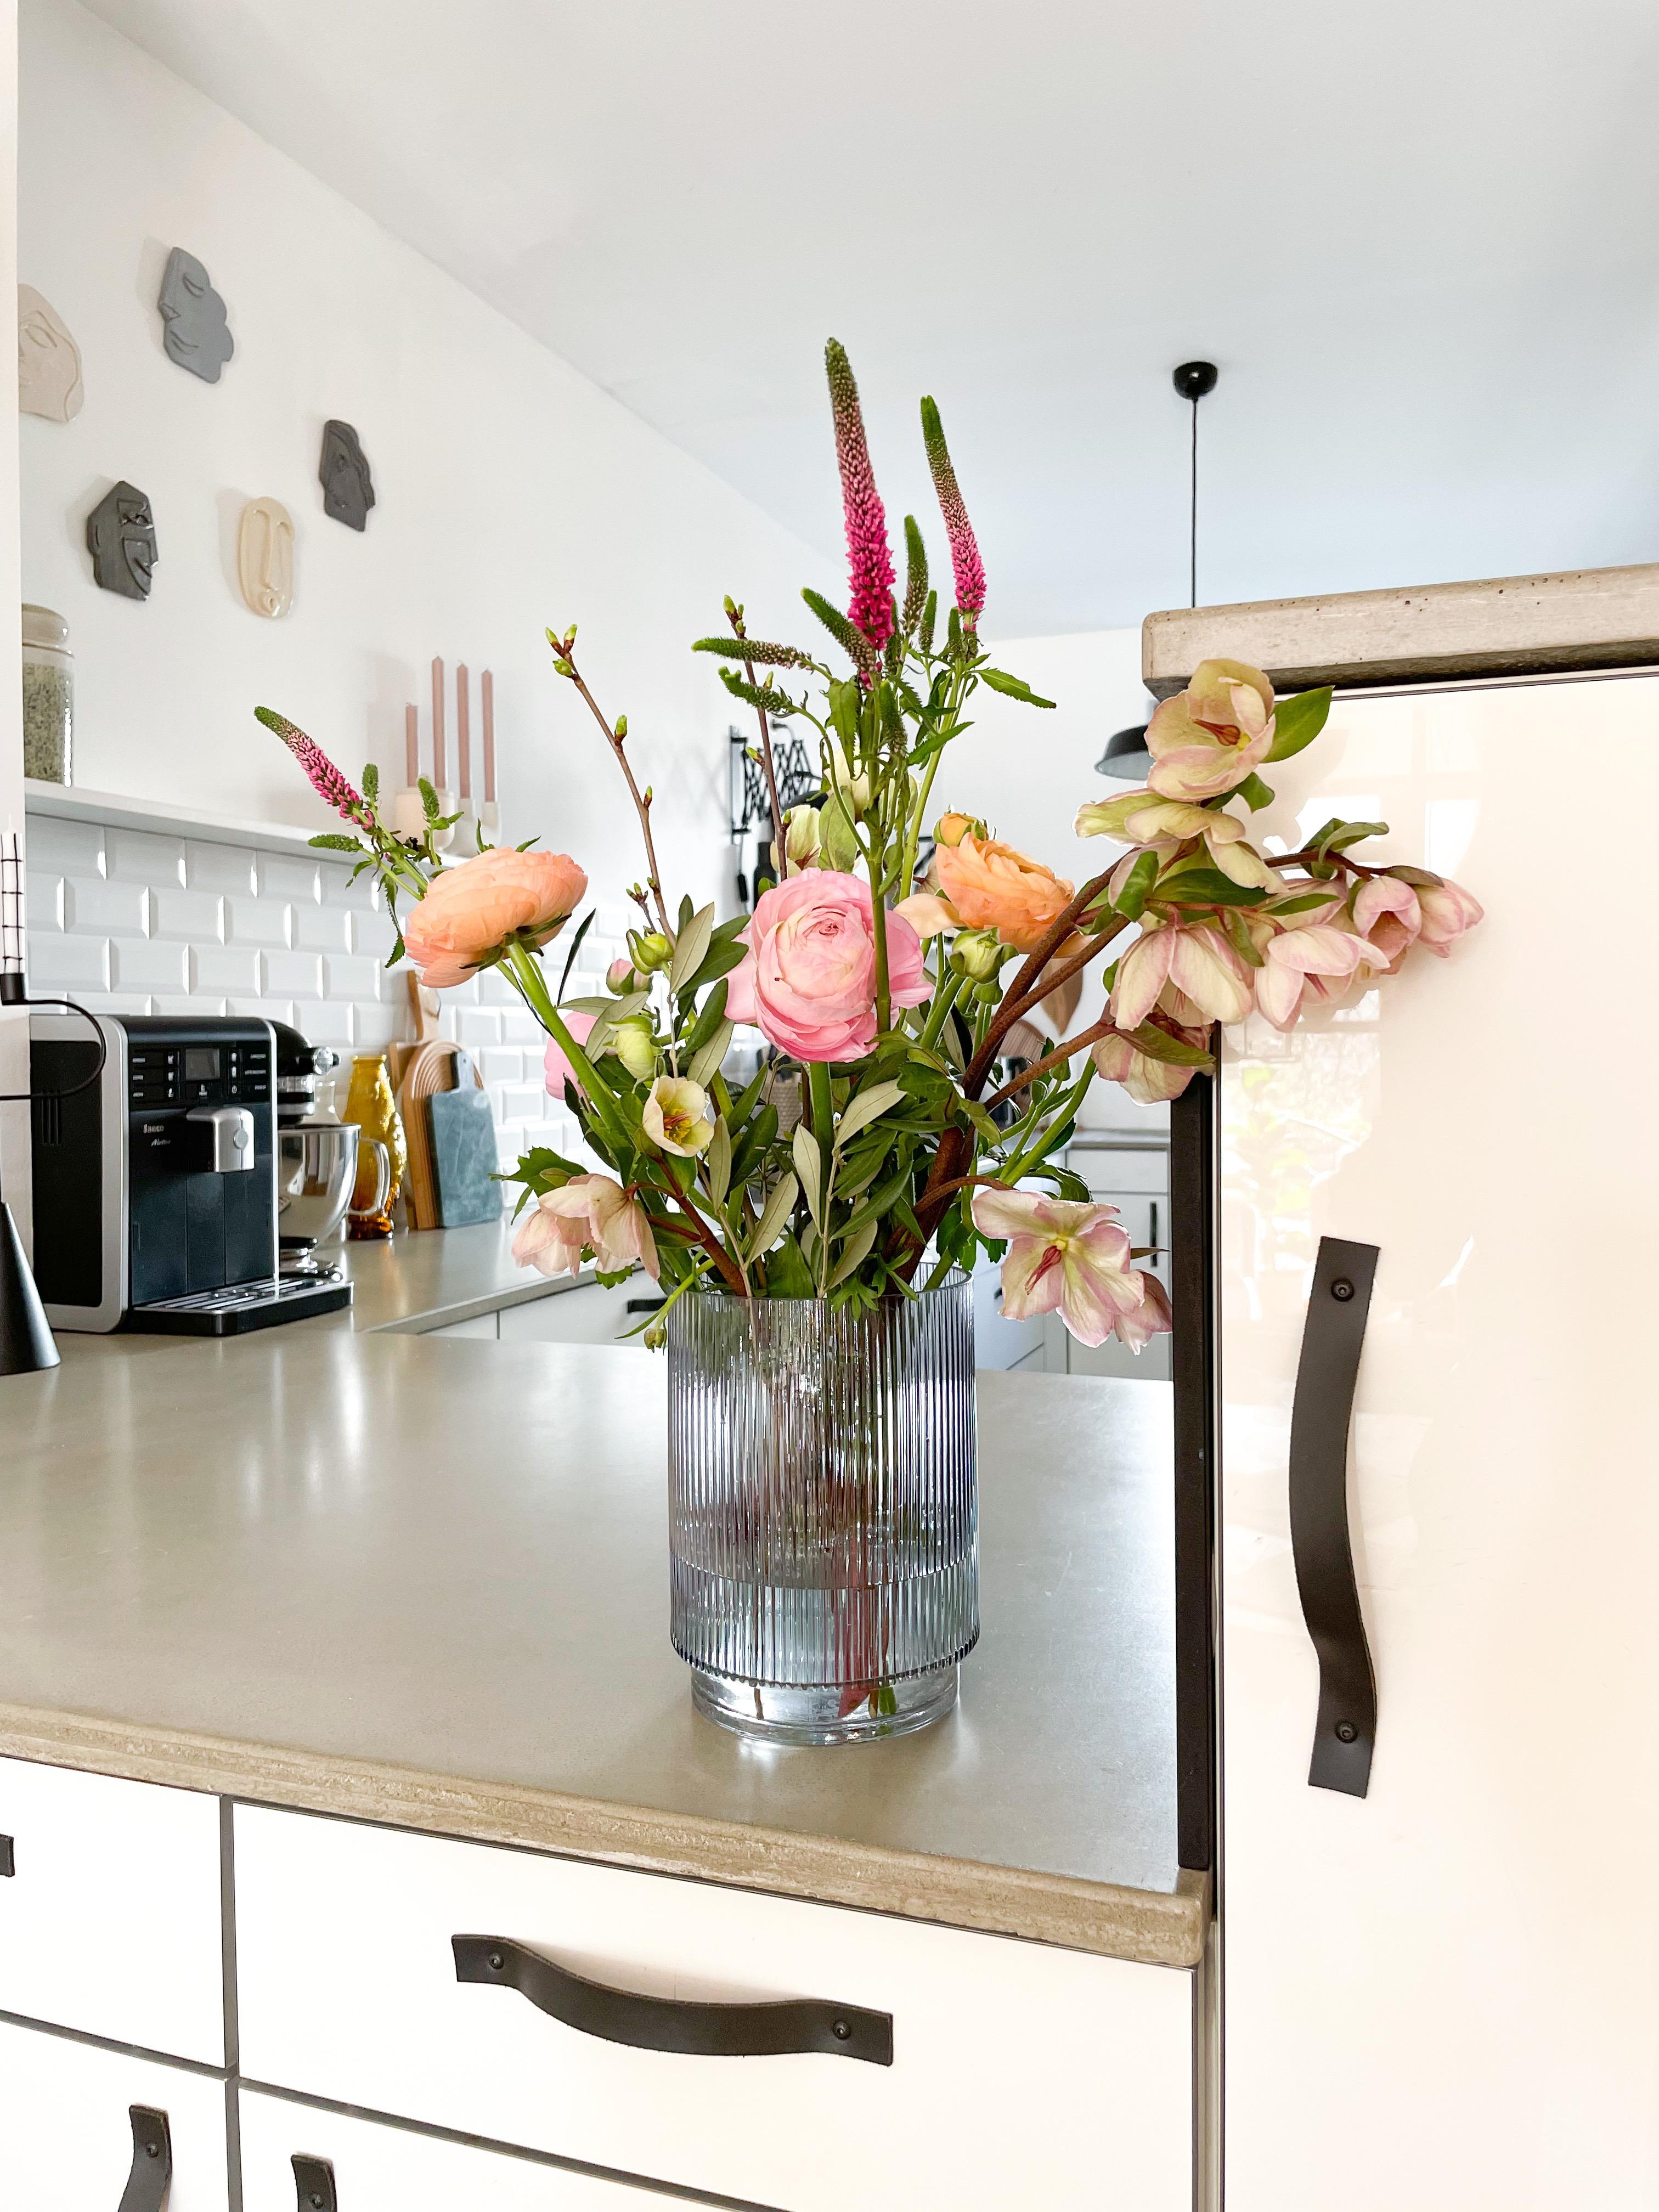 Durch die Blume gesagt ...

#Küche #Metrofliesen #Blumen #Blumenvase